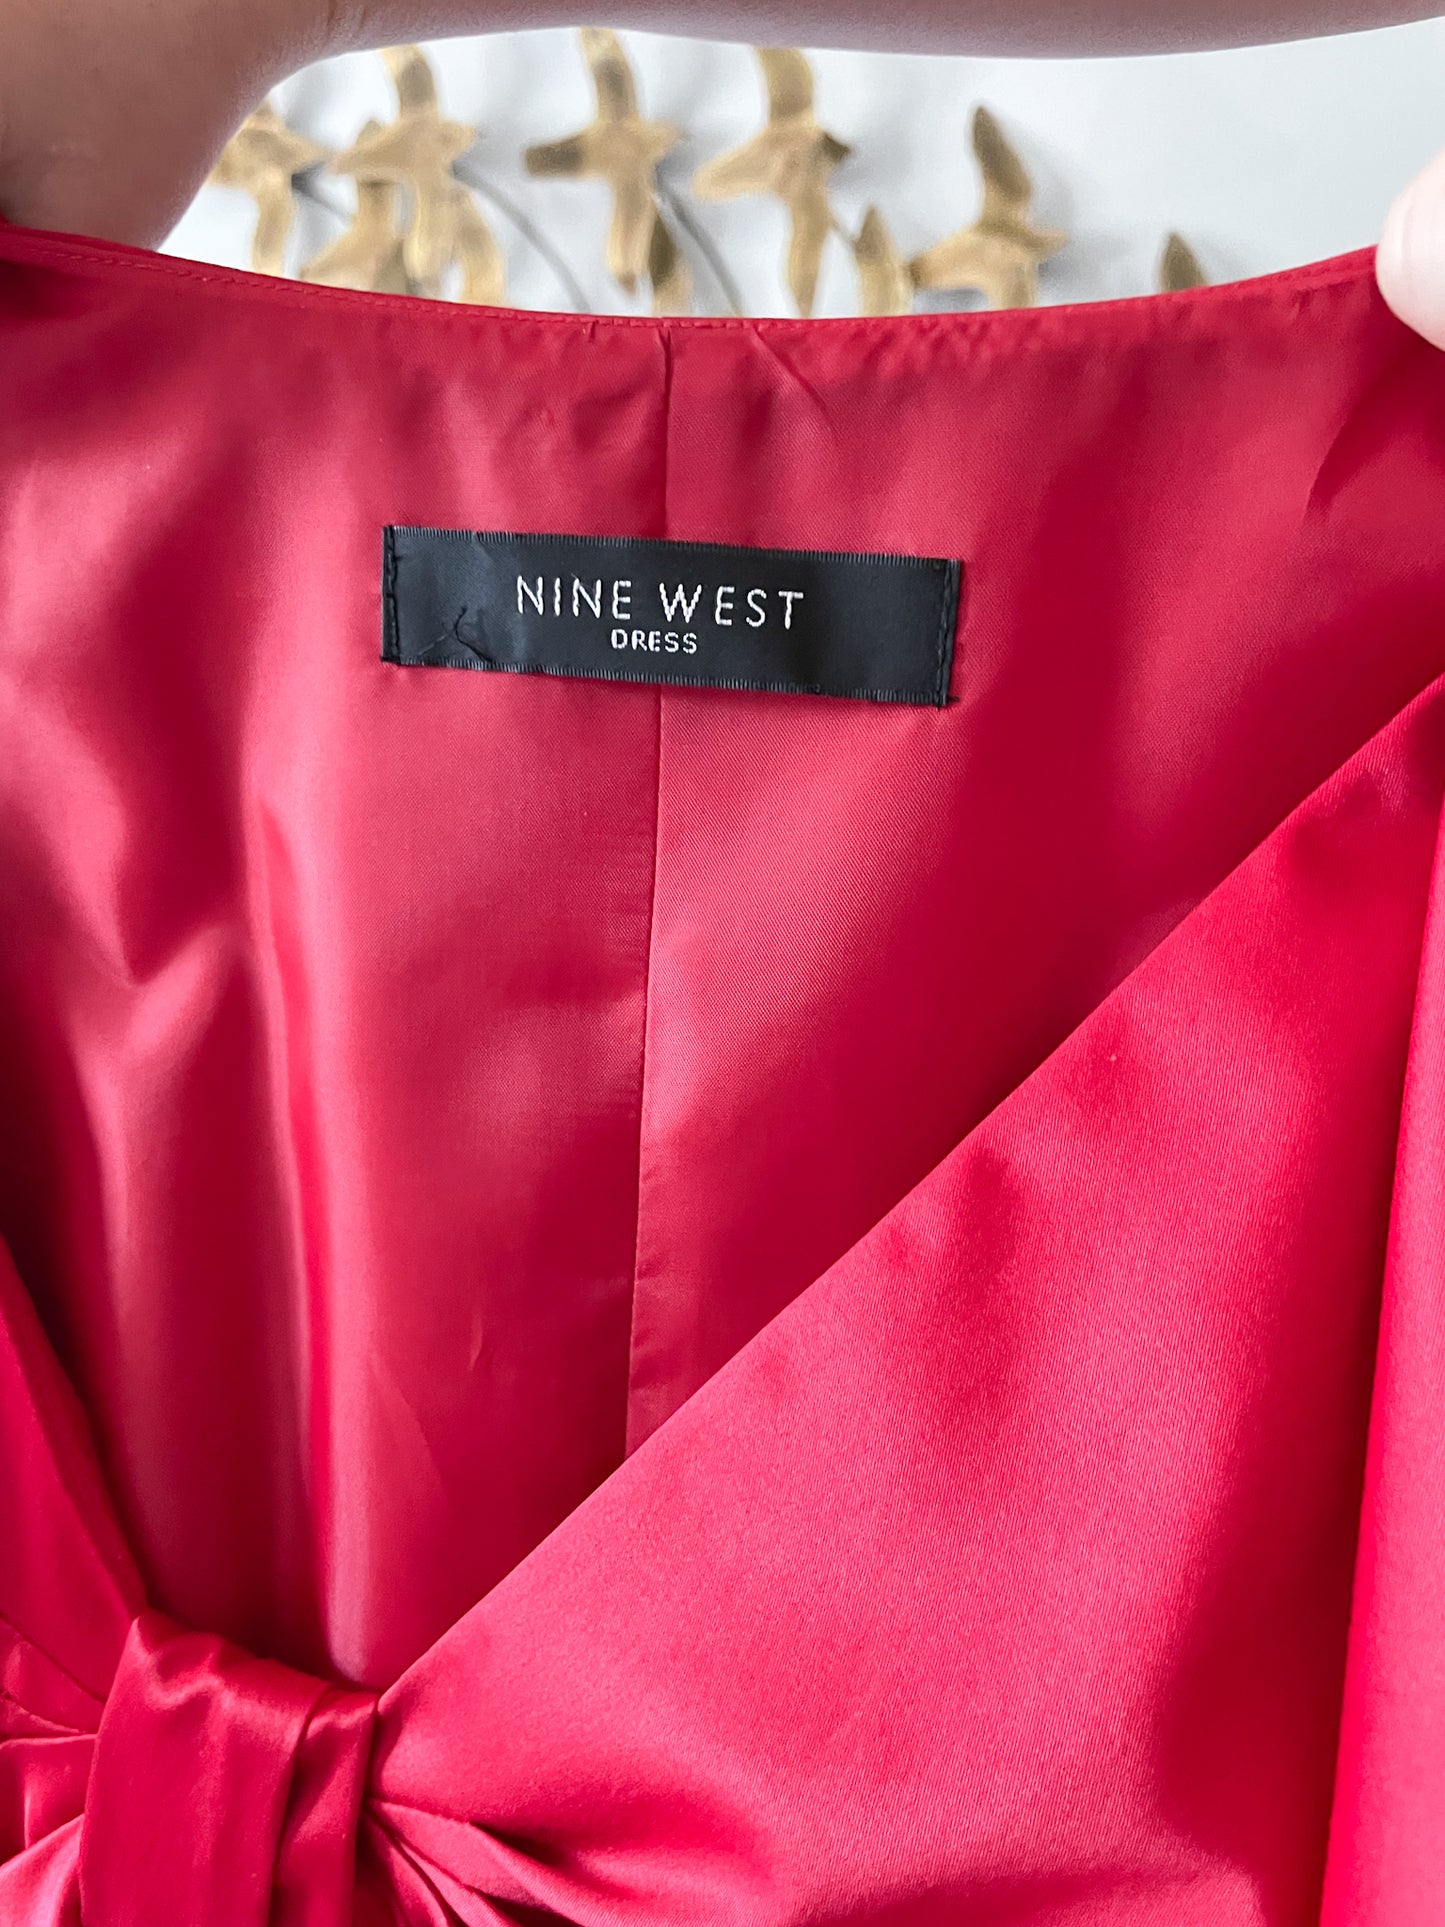 Nine West Red Satin Bow Neckline Cocktail Dress - Medium